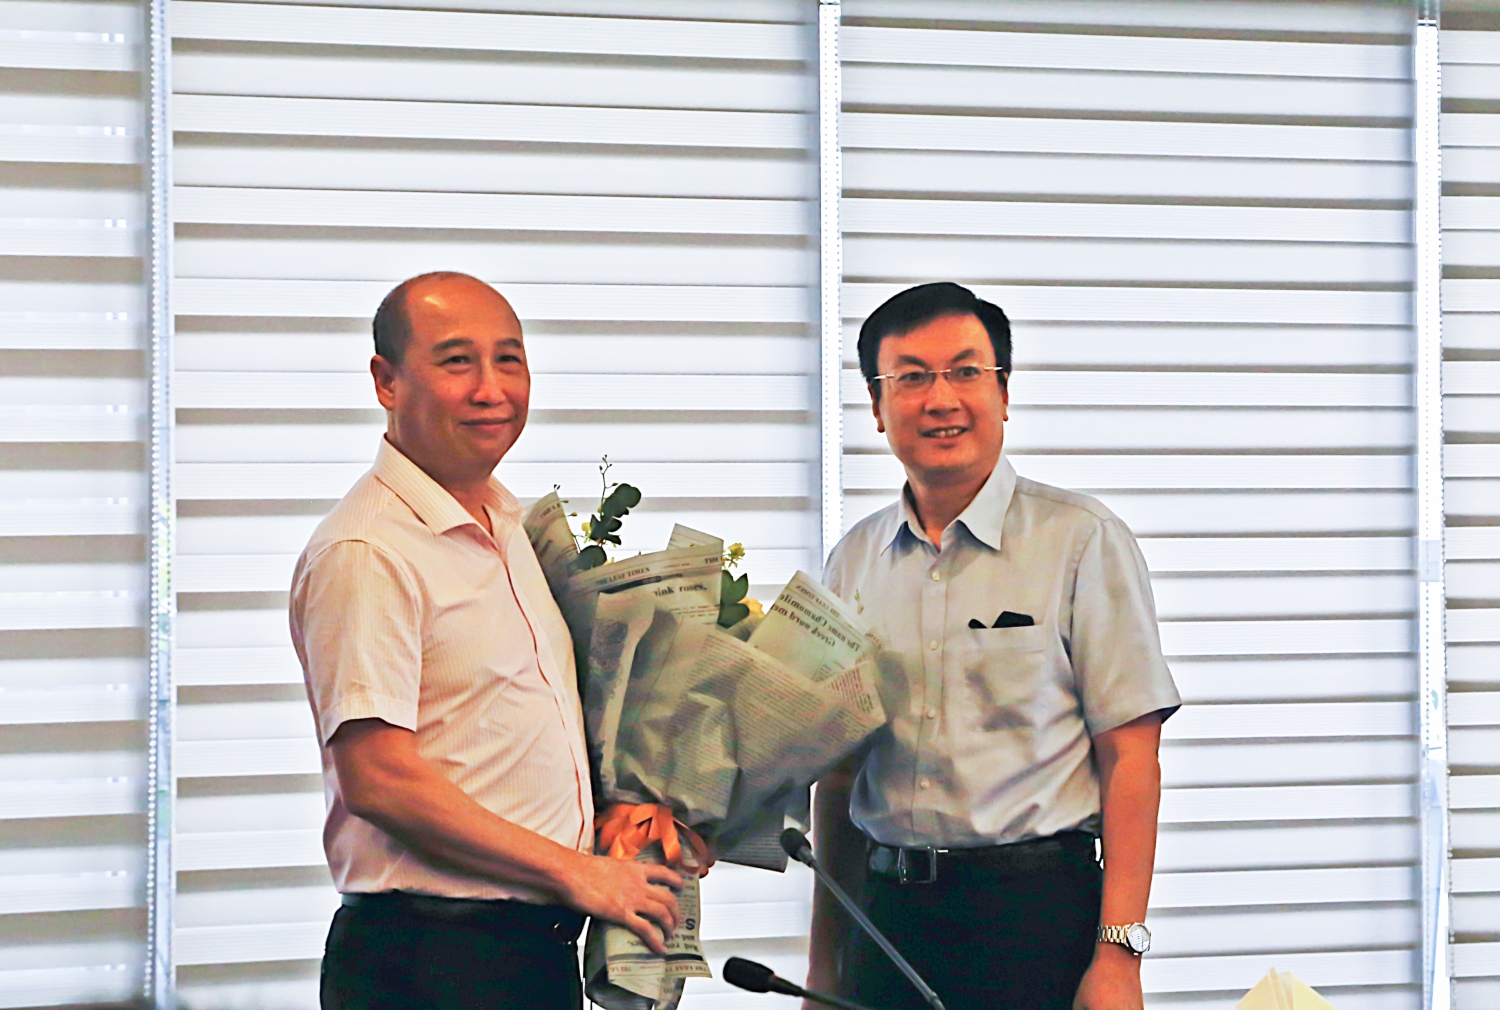 Ông Đoàn Linh - Ủy viên HĐQT PVI tặng hoa chúc mừng ông Vũ Bảo Lâm – PTGĐ Tổng Công ty Bảo hiểm PVI kiêm nhiệm giữ chức vụ Giám đốc Trung tâm CNTT